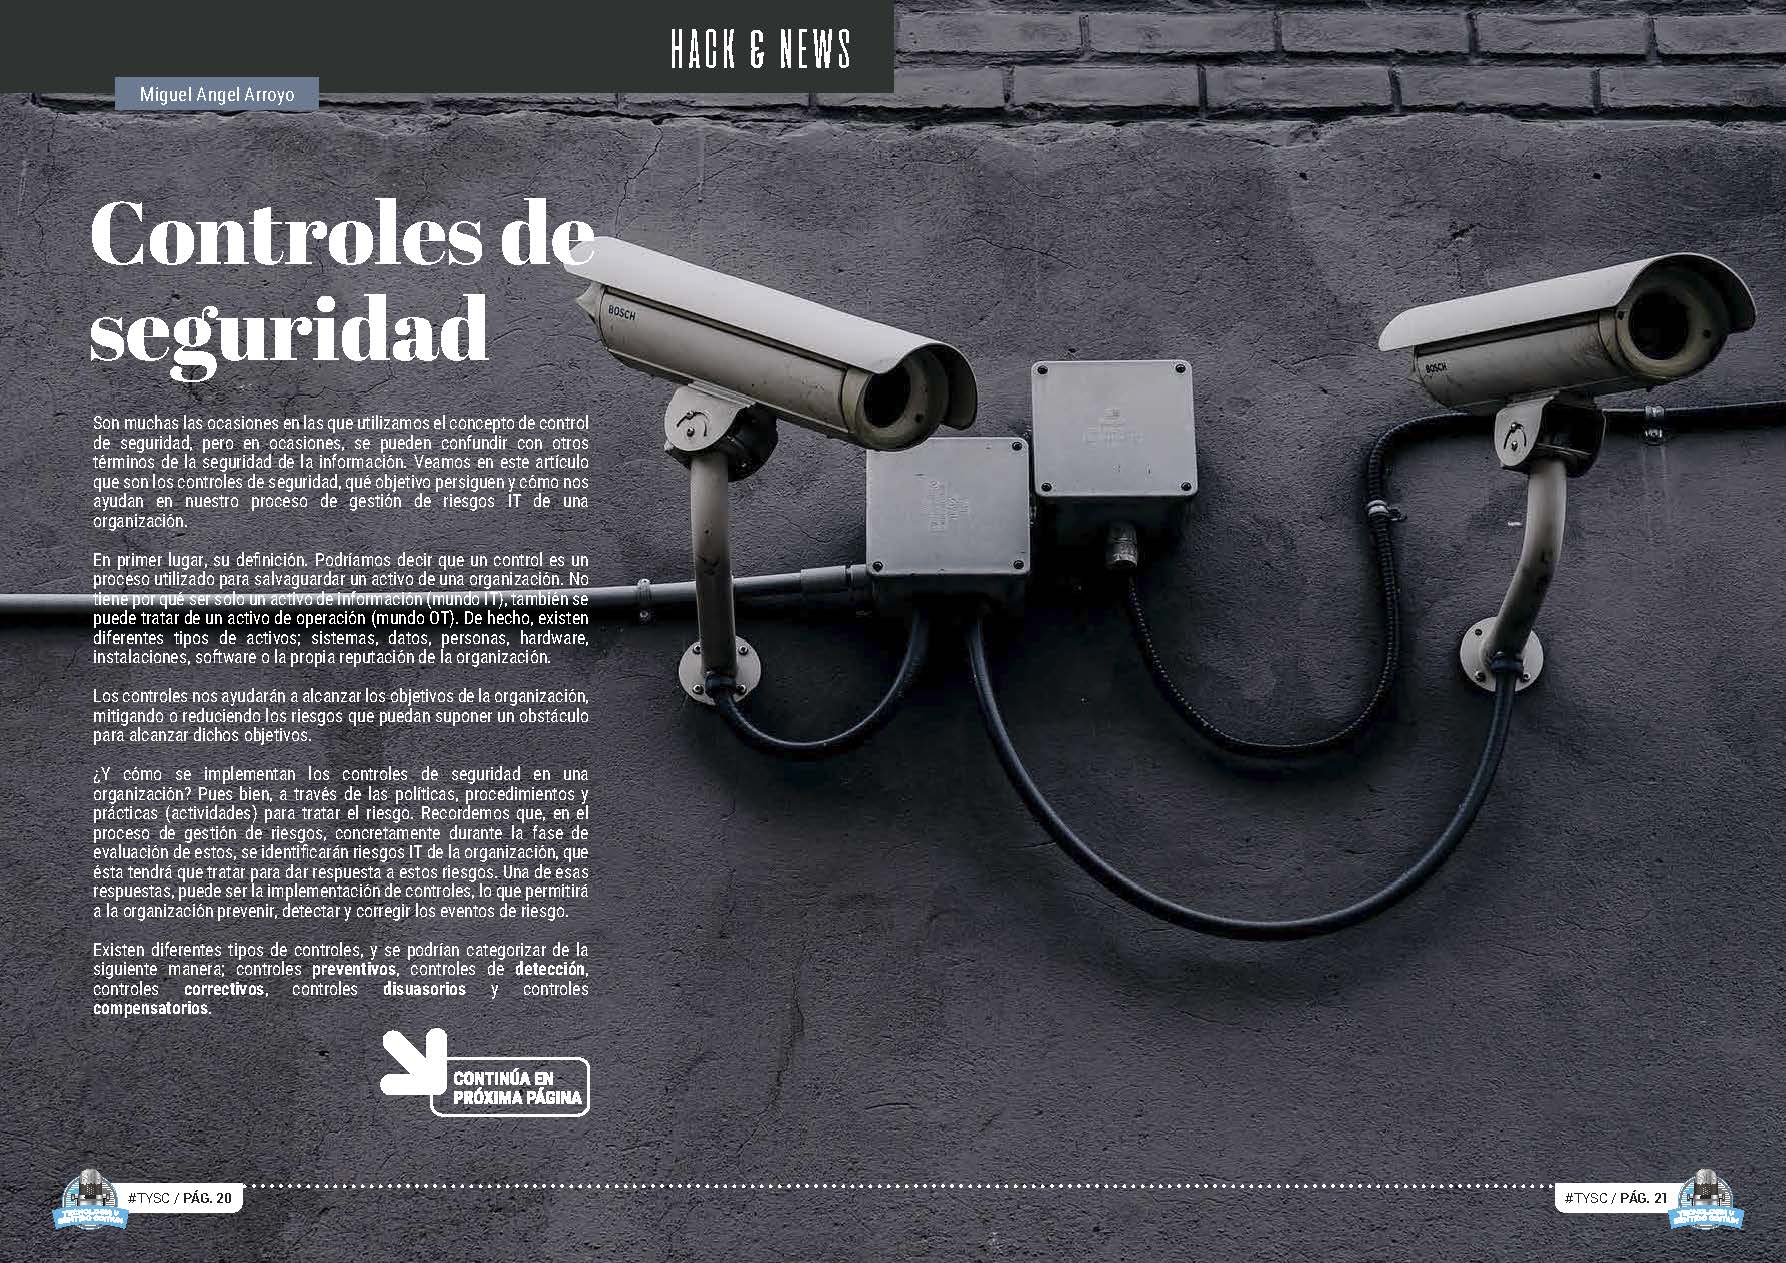 Artículo "Controles de seguridad" de Miguel Angel Arroyo Moreno en la Sección "Hack & News" de la Revista Tecnología y Sentido Común #TYSC26 de enero de 2023